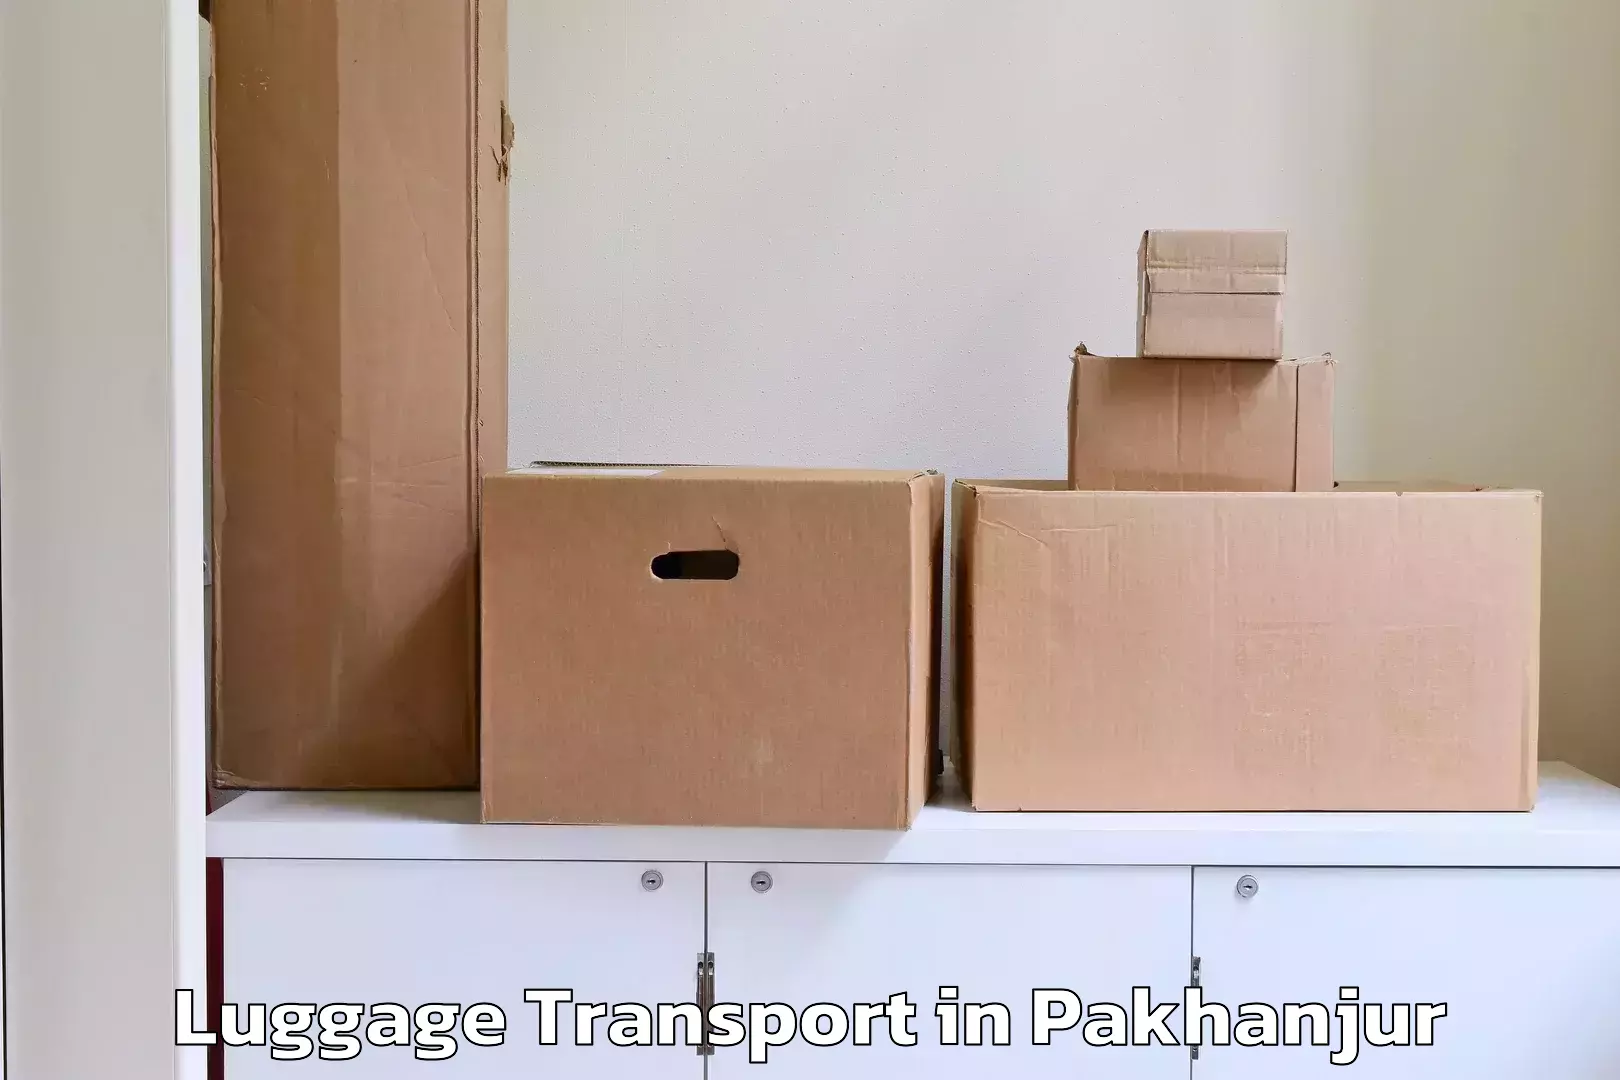 Luggage transport service in Pakhanjur